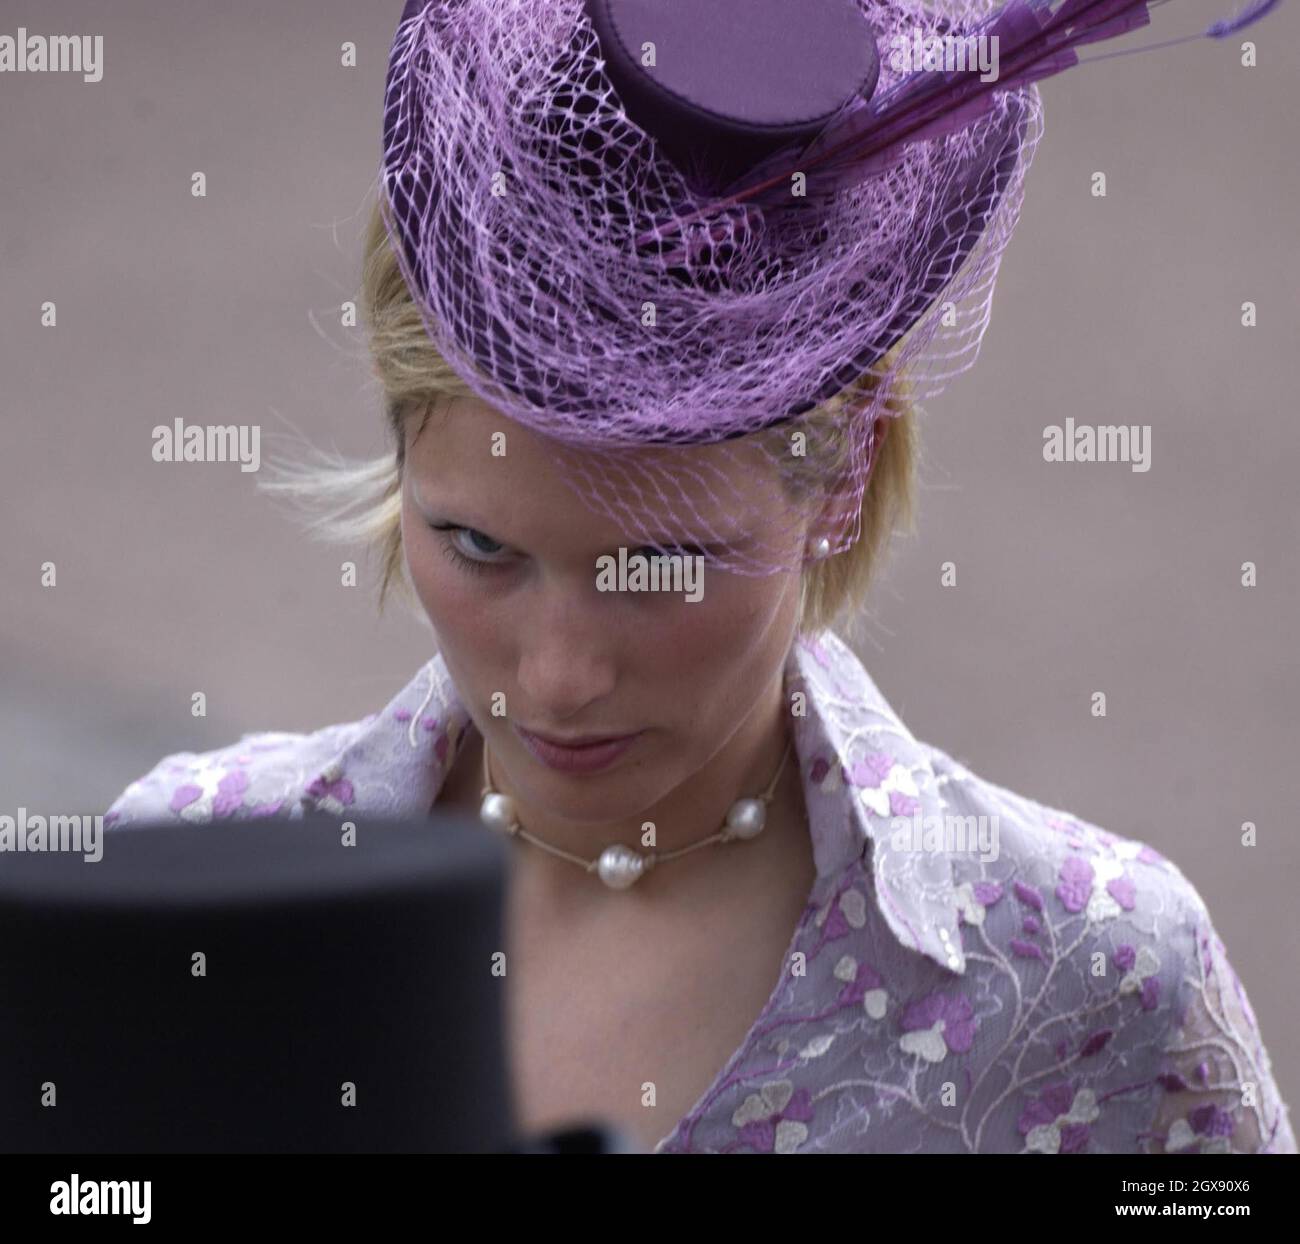 Zara Phillips am Eröffnungstag von Royal Ascot. Zara trägt einen Likakhut  mit Feder und einem passenden, gestickten, lila taillierten Kleid.  Kopfschuss, Lizenzgebühren Stockfotografie - Alamy